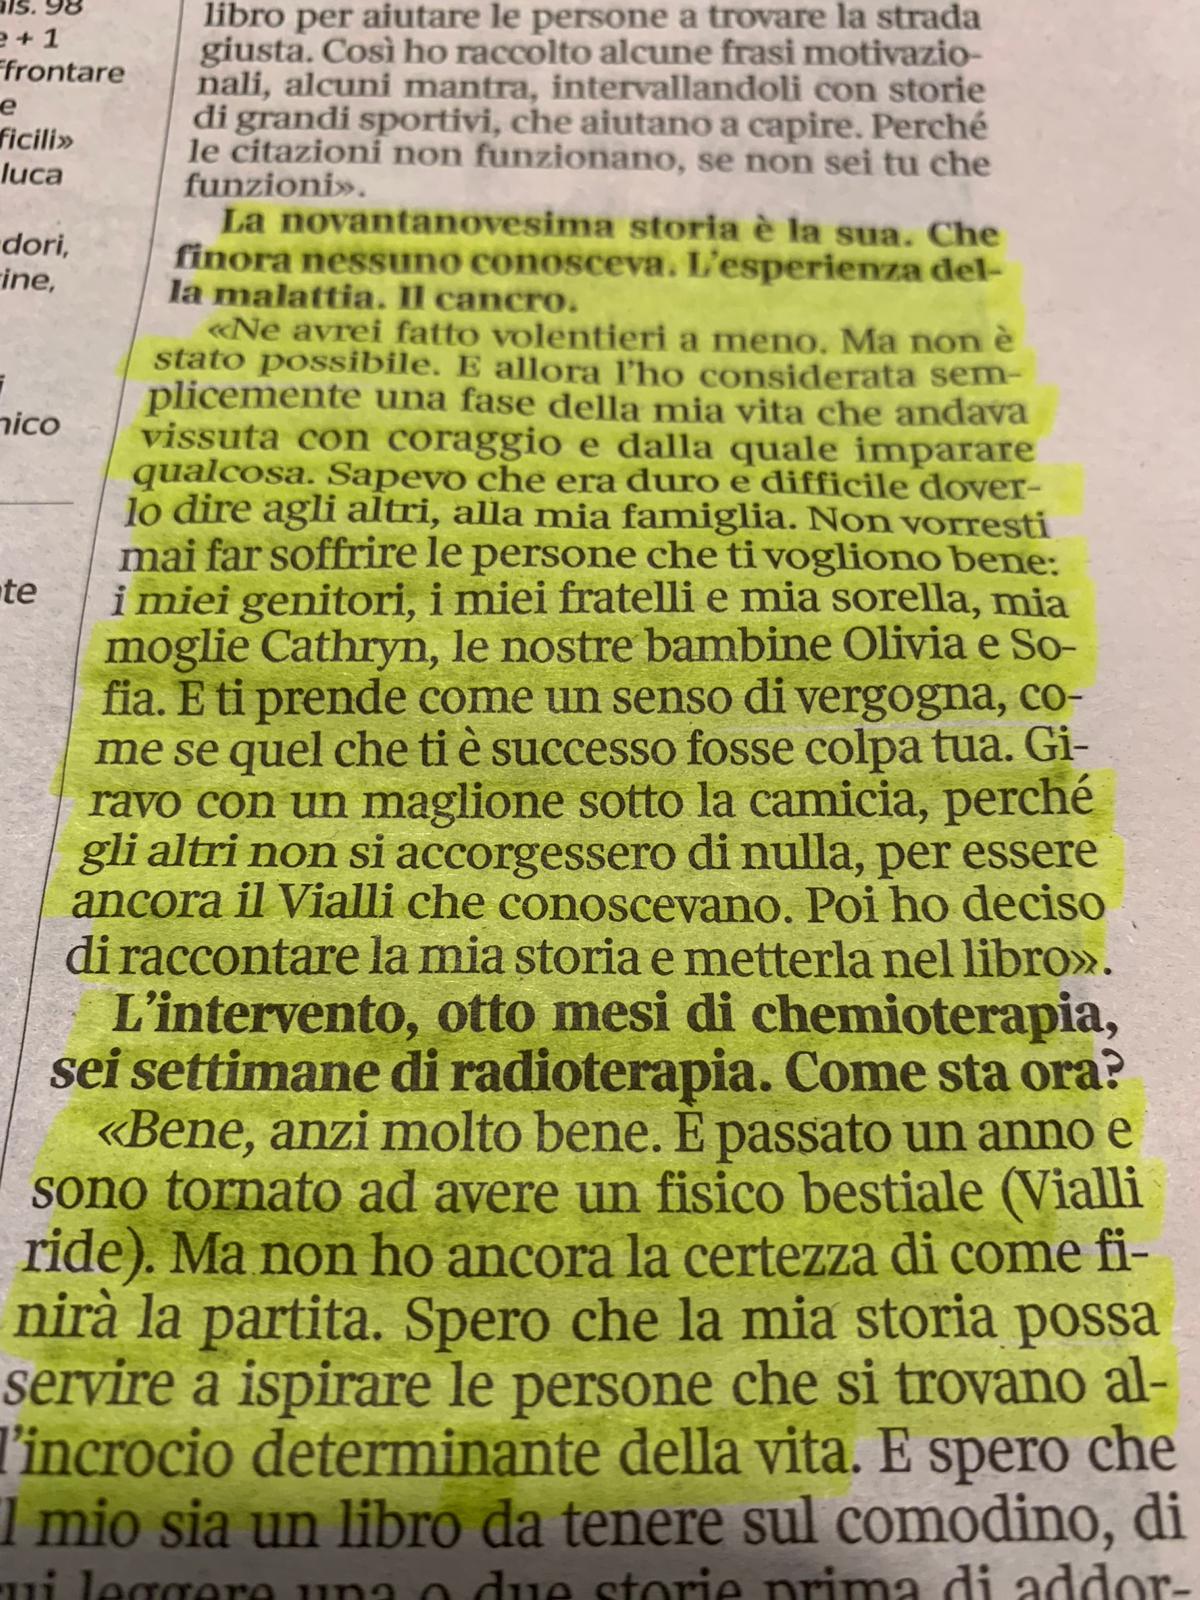 Matteo Renzi on X: Bellissima l'intervista sul Corriere di oggi di Aldo  Cazzullo a Gianluca Vialli. Sul calcio certo. Ma anche sulla vita e sulla  lotta contro il cancro. #DaLeggere  /